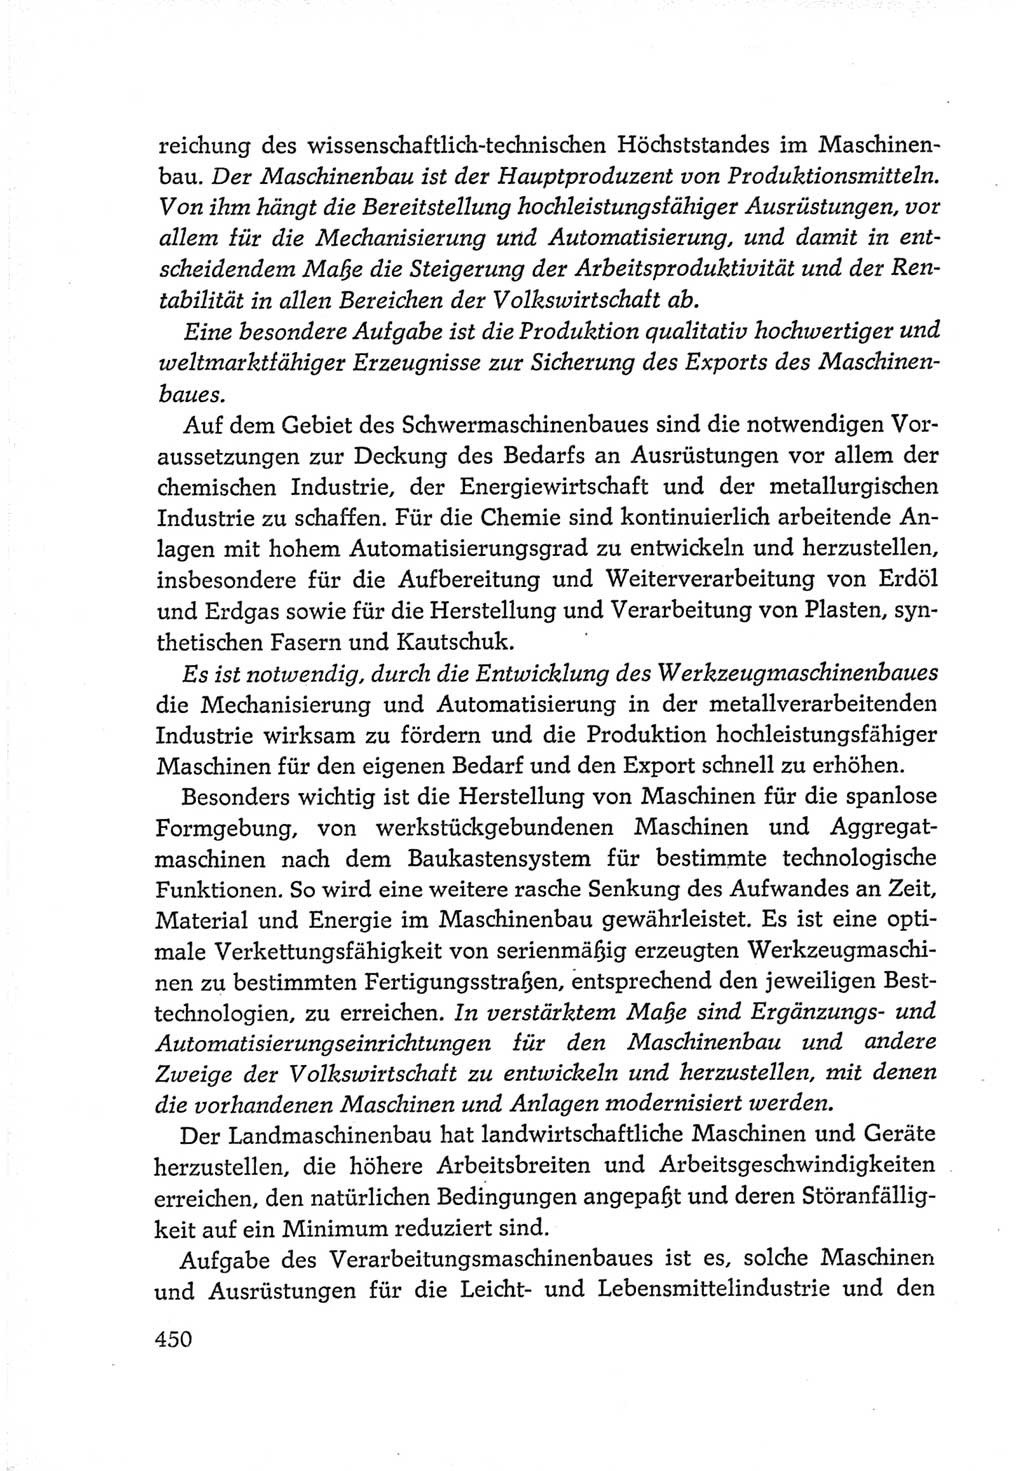 Protokoll der Verhandlungen des Ⅵ. Parteitages der Sozialistischen Einheitspartei Deutschlands (SED) [Deutsche Demokratische Republik (DDR)] 1963, Band Ⅳ, Seite 450 (Prot. Verh. Ⅵ. PT SED DDR 1963, Bd. Ⅳ, S. 450)